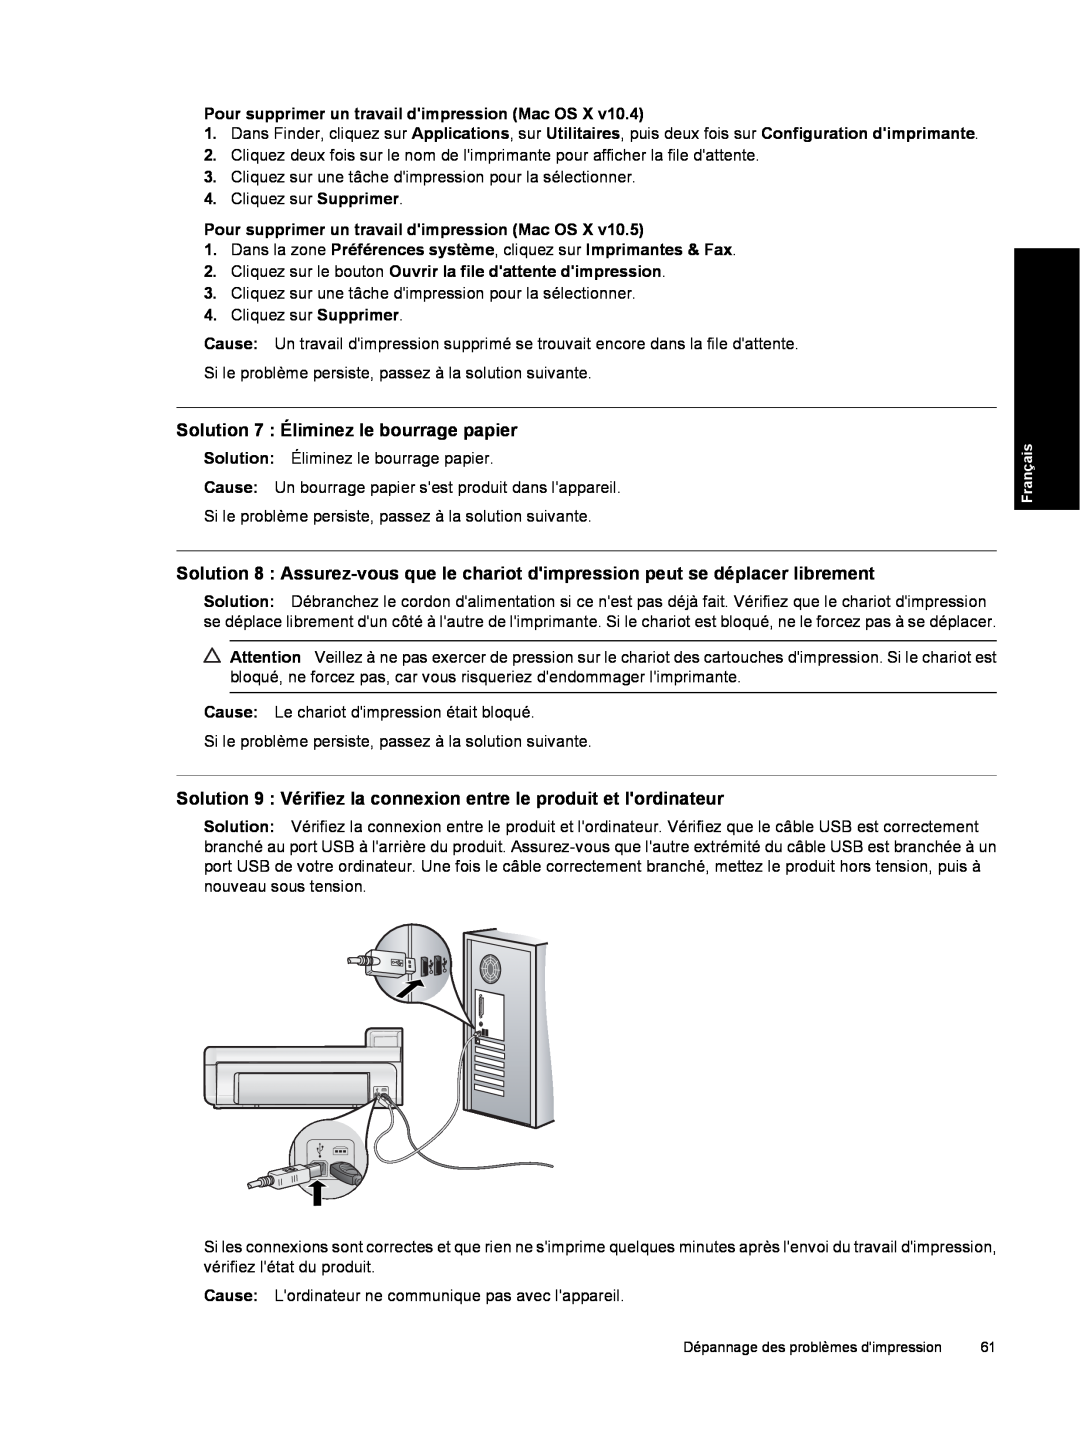 HP B8550 Photo CB981A#B1H manual Solution 7 Éliminez le bourrage papier, Pour supprimer un travail dimpression Mac OS X 